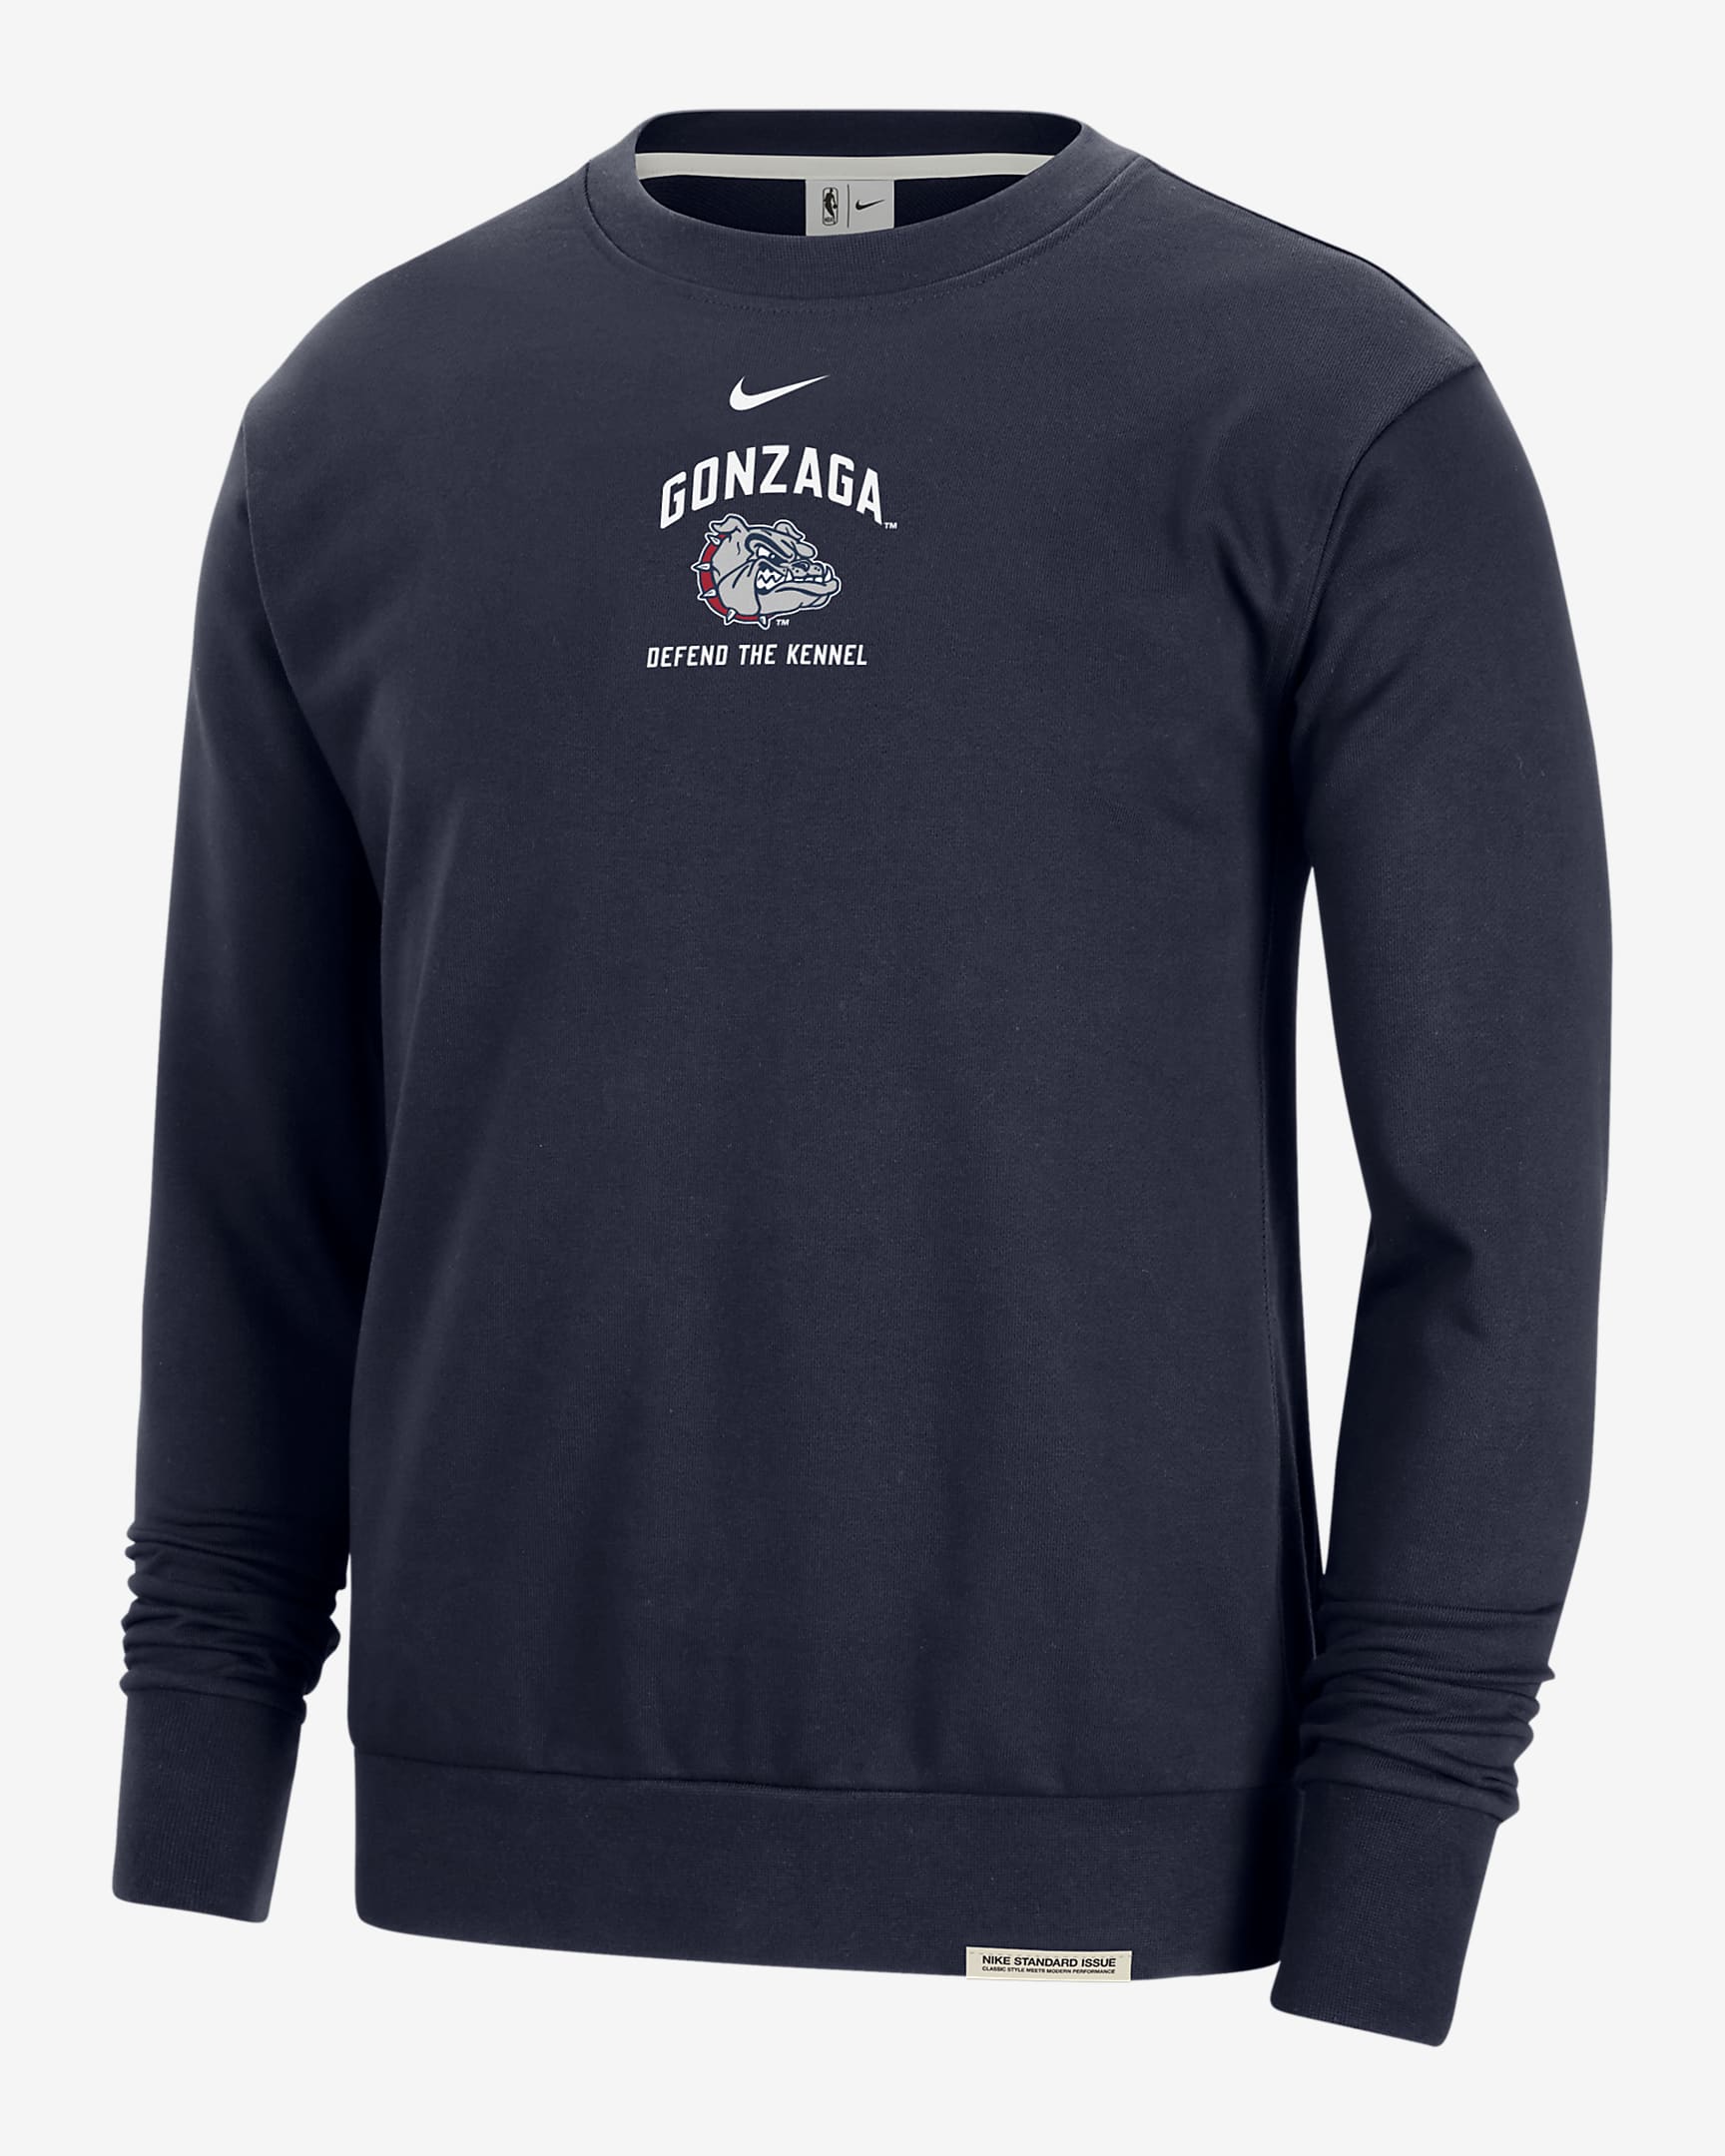 Gonzaga Standard Issue Men's Nike College Fleece Crew-Neck Sweatshirt ...